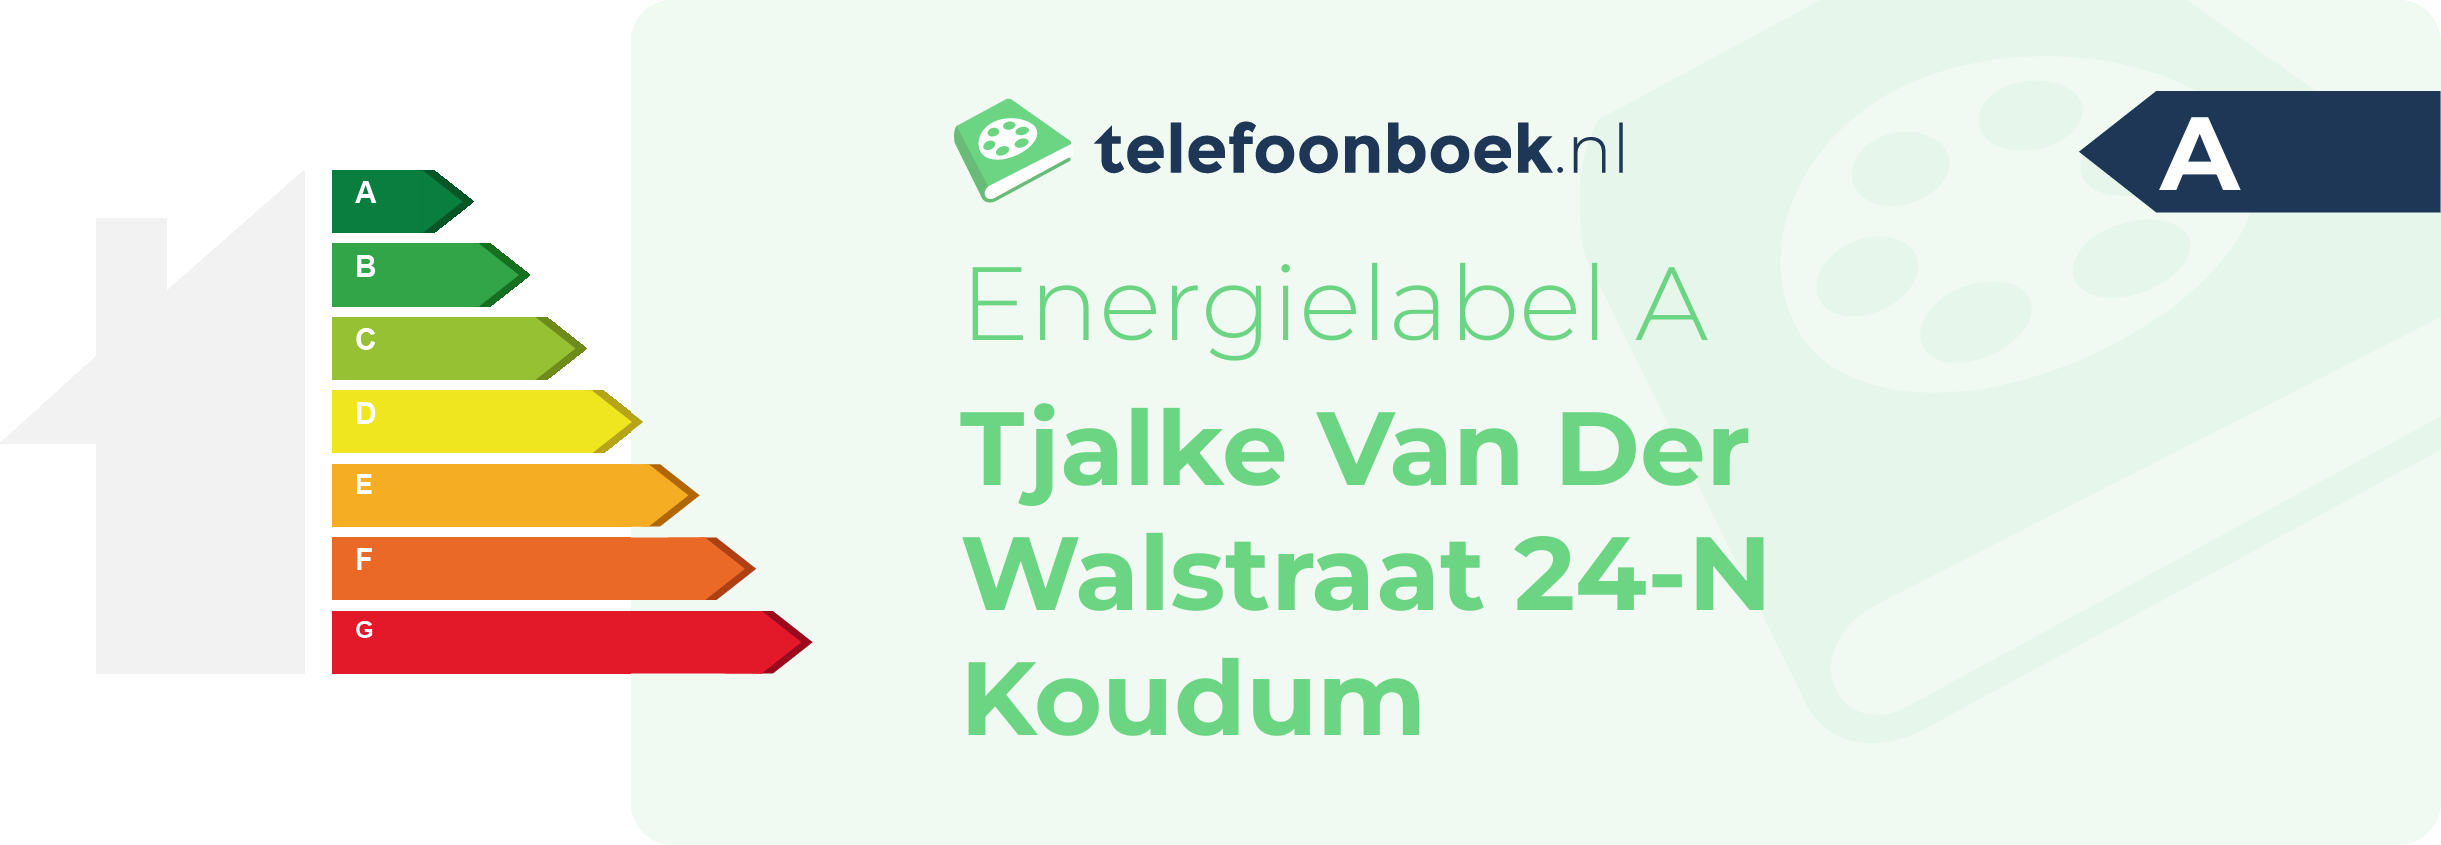 Energielabel Tjalke Van Der Walstraat 24-N Koudum